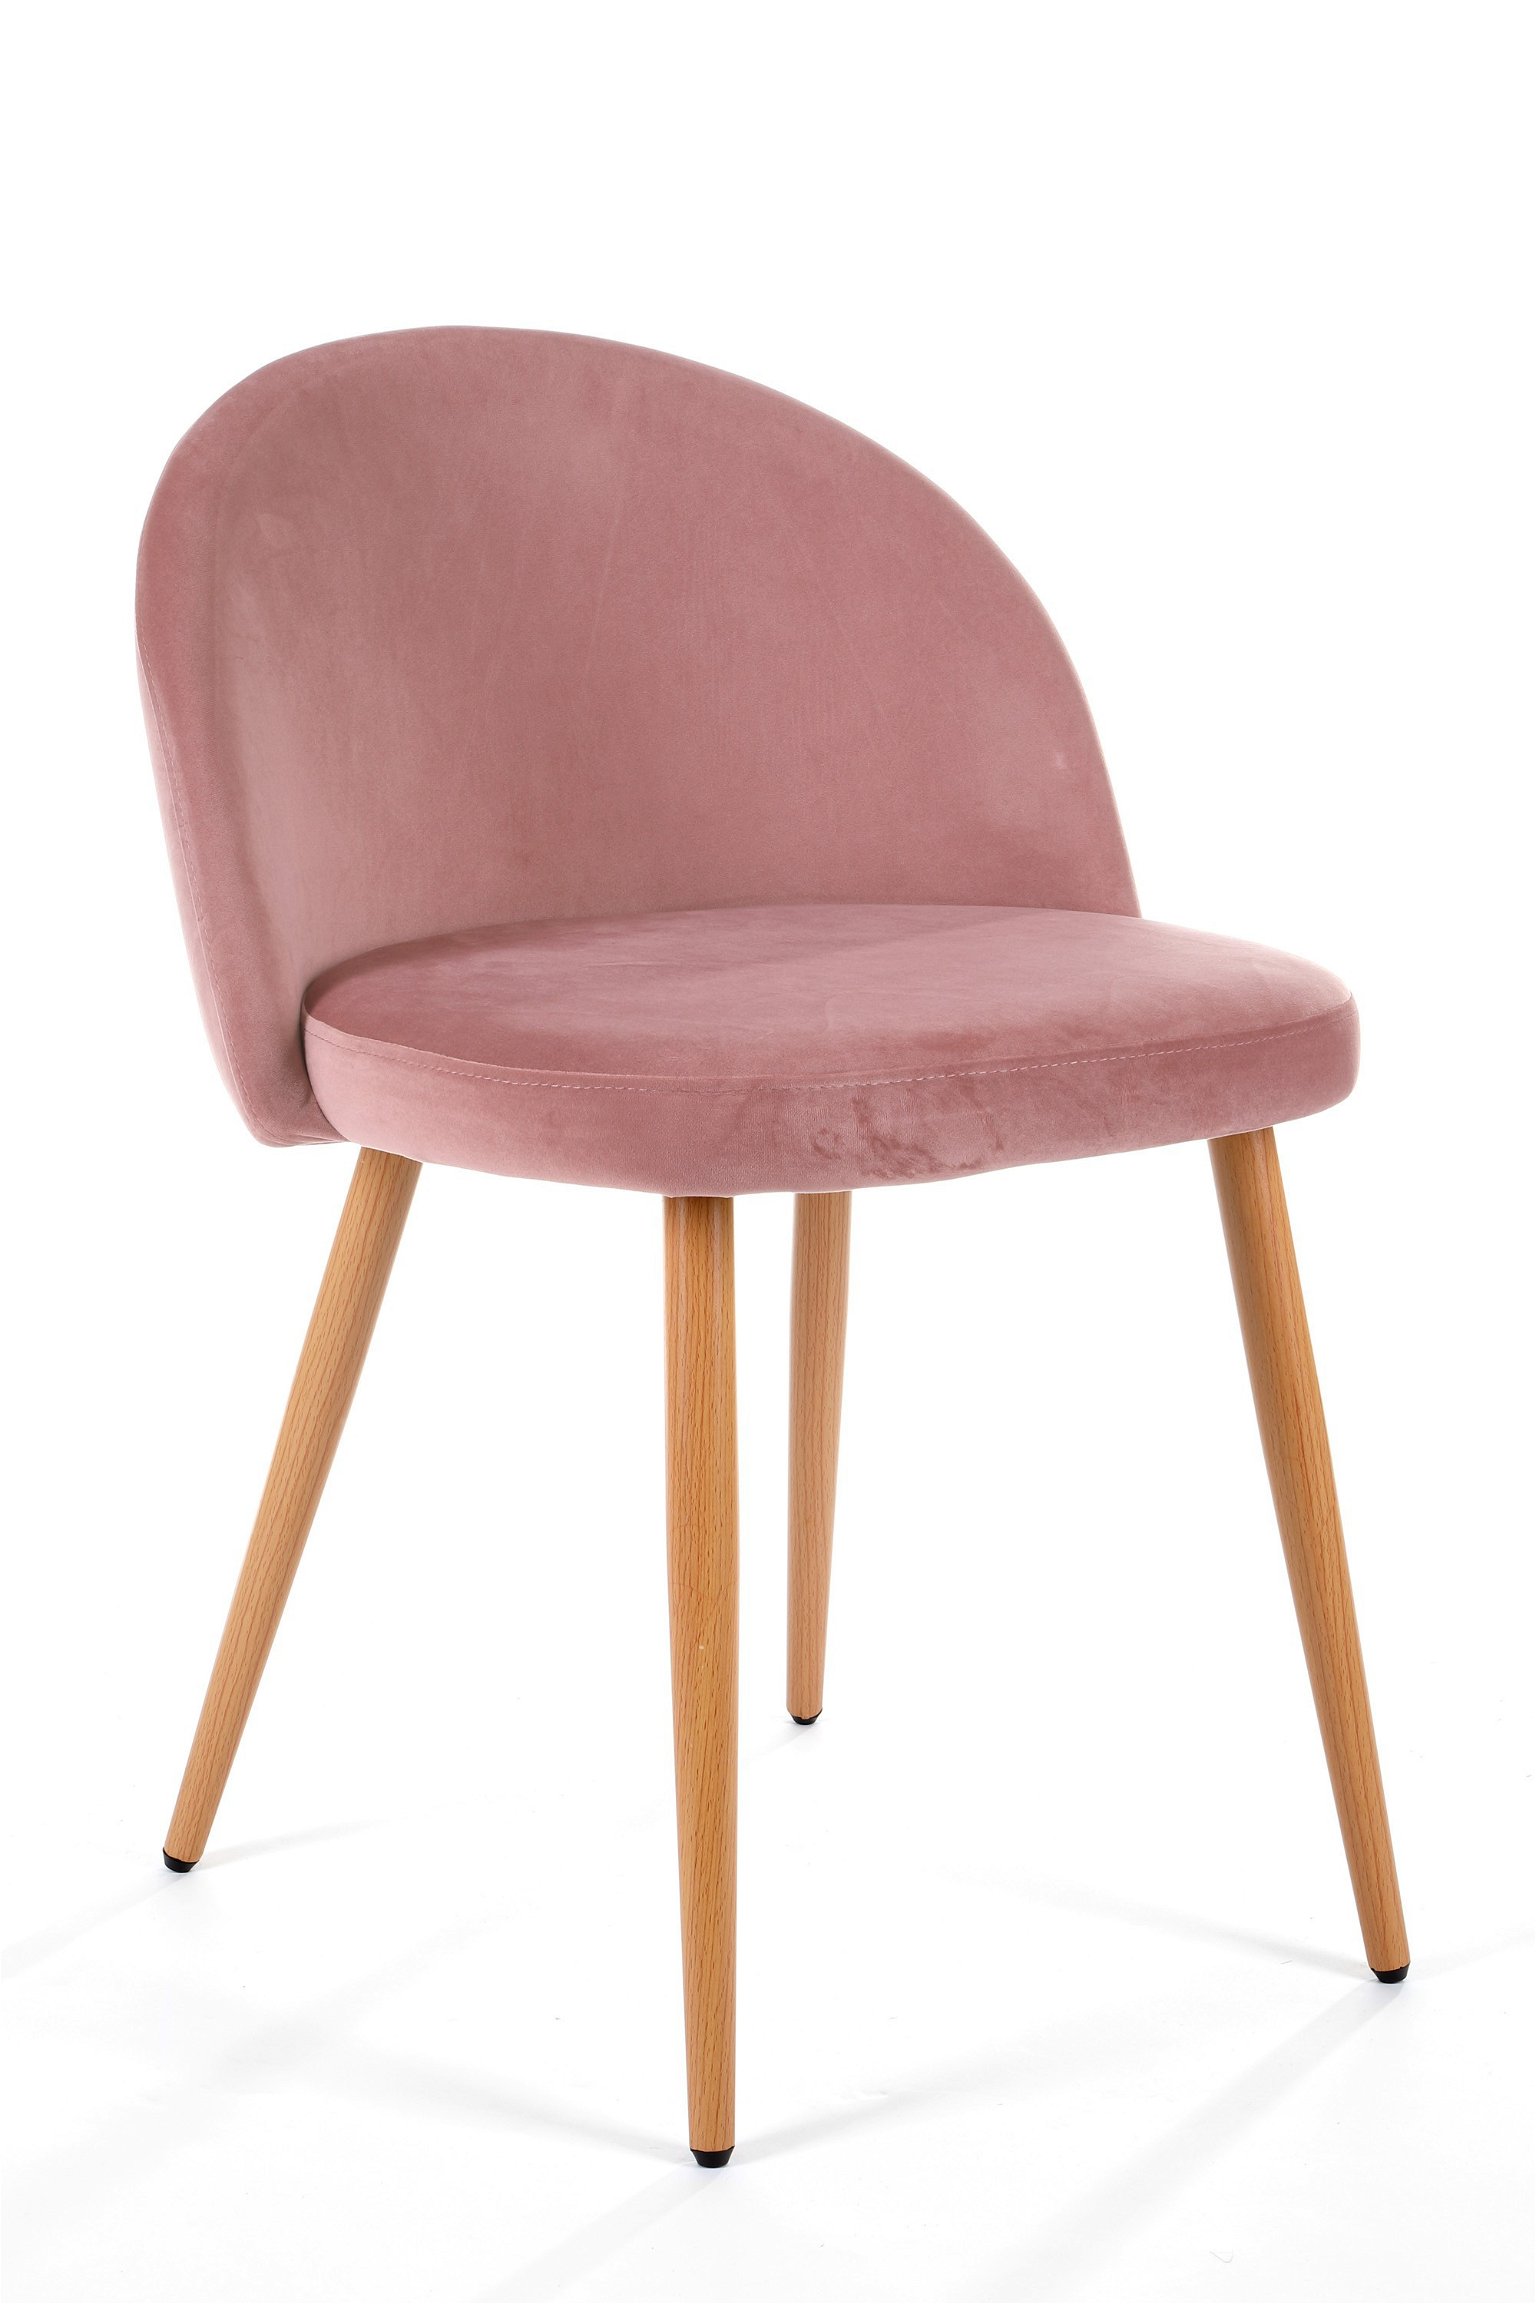 4-rių kėdžių komplektas SJ.075, rožinis